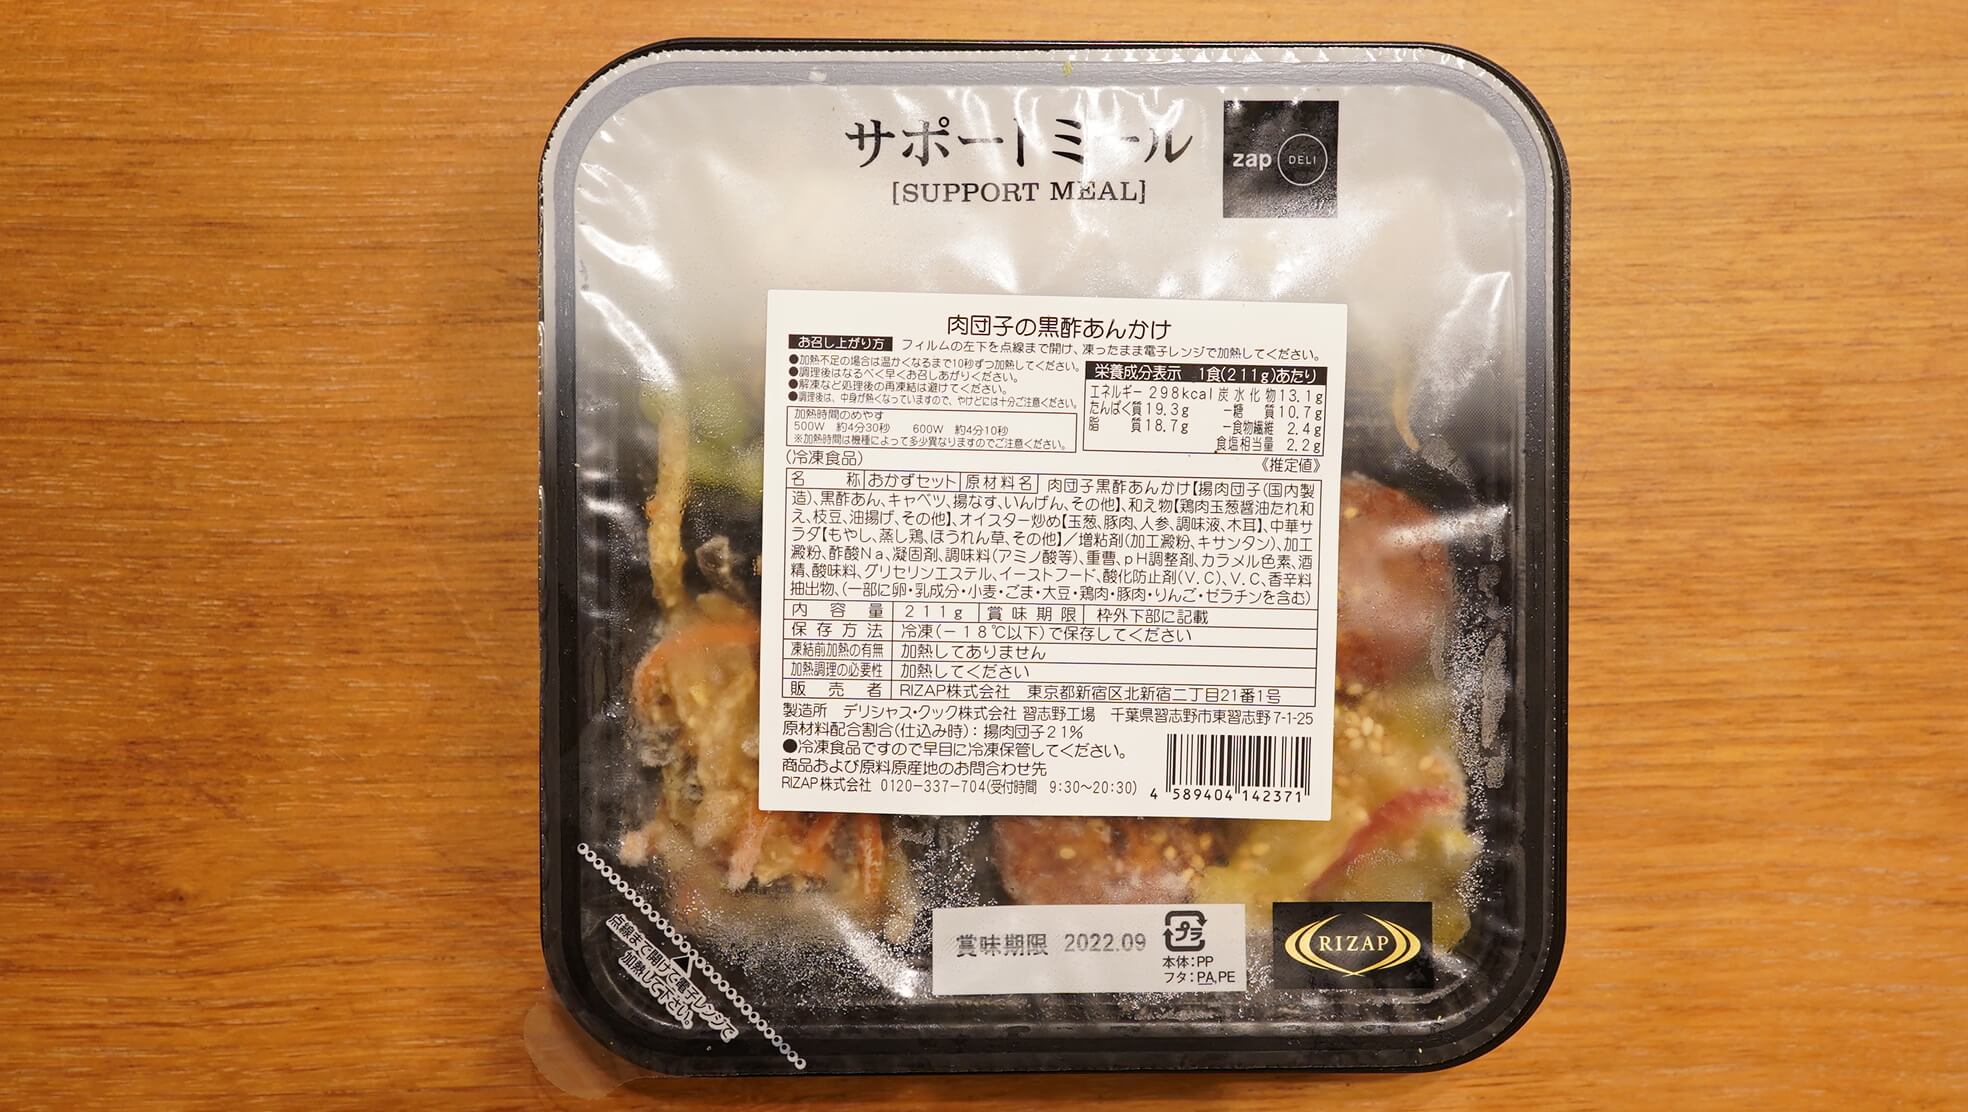 ライザップの冷凍弁当・サポートミール「肉団子の黒酢あんかけ」のパッケージ写真